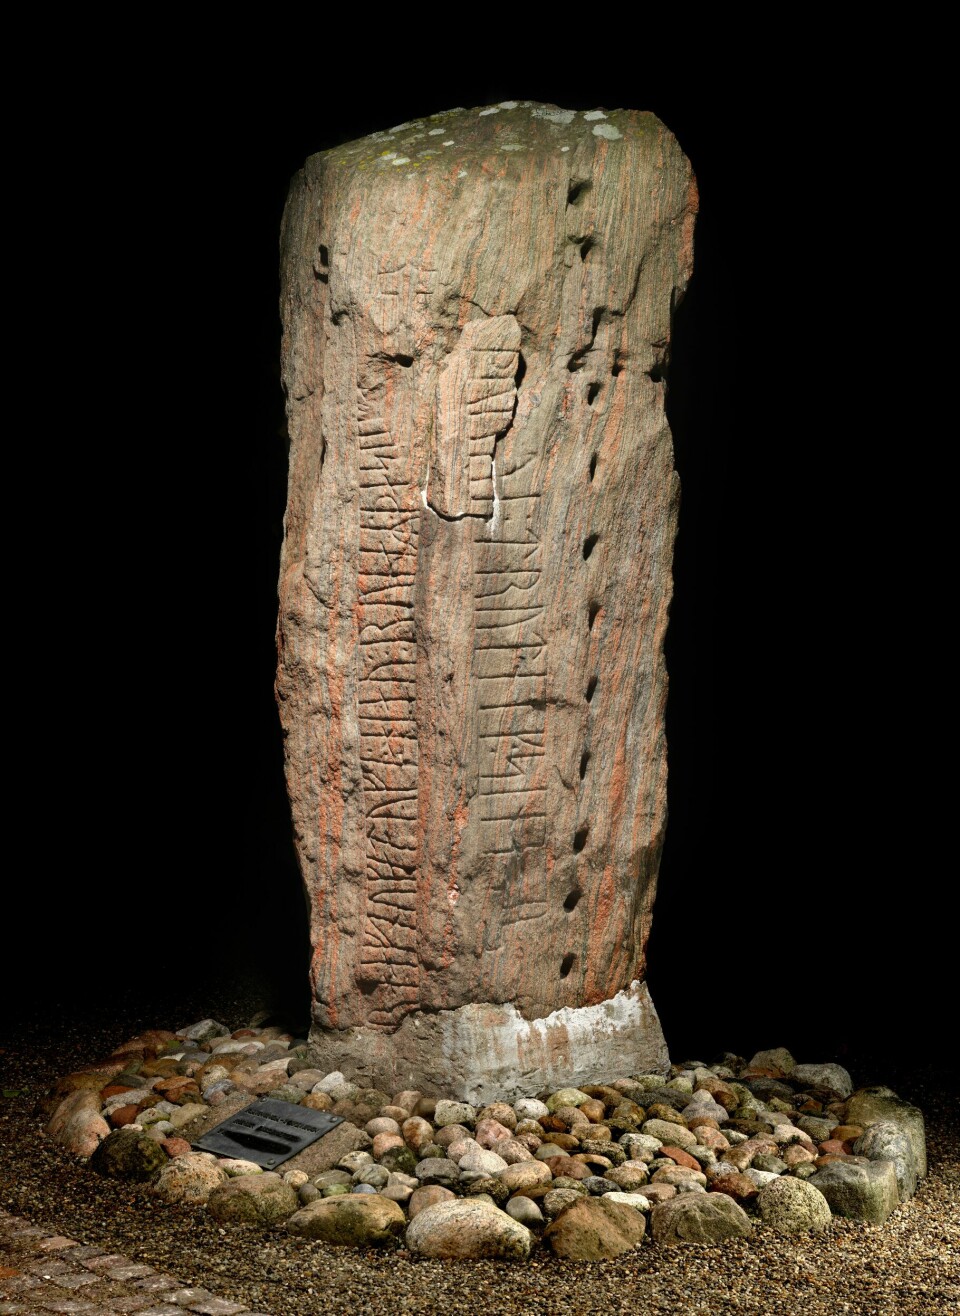 Samme Ravnunge- Tue har også risset Læborgsteinen, der det står at «Ravnunge-Tue hugget disse runene etter Thyra, sin dronning».